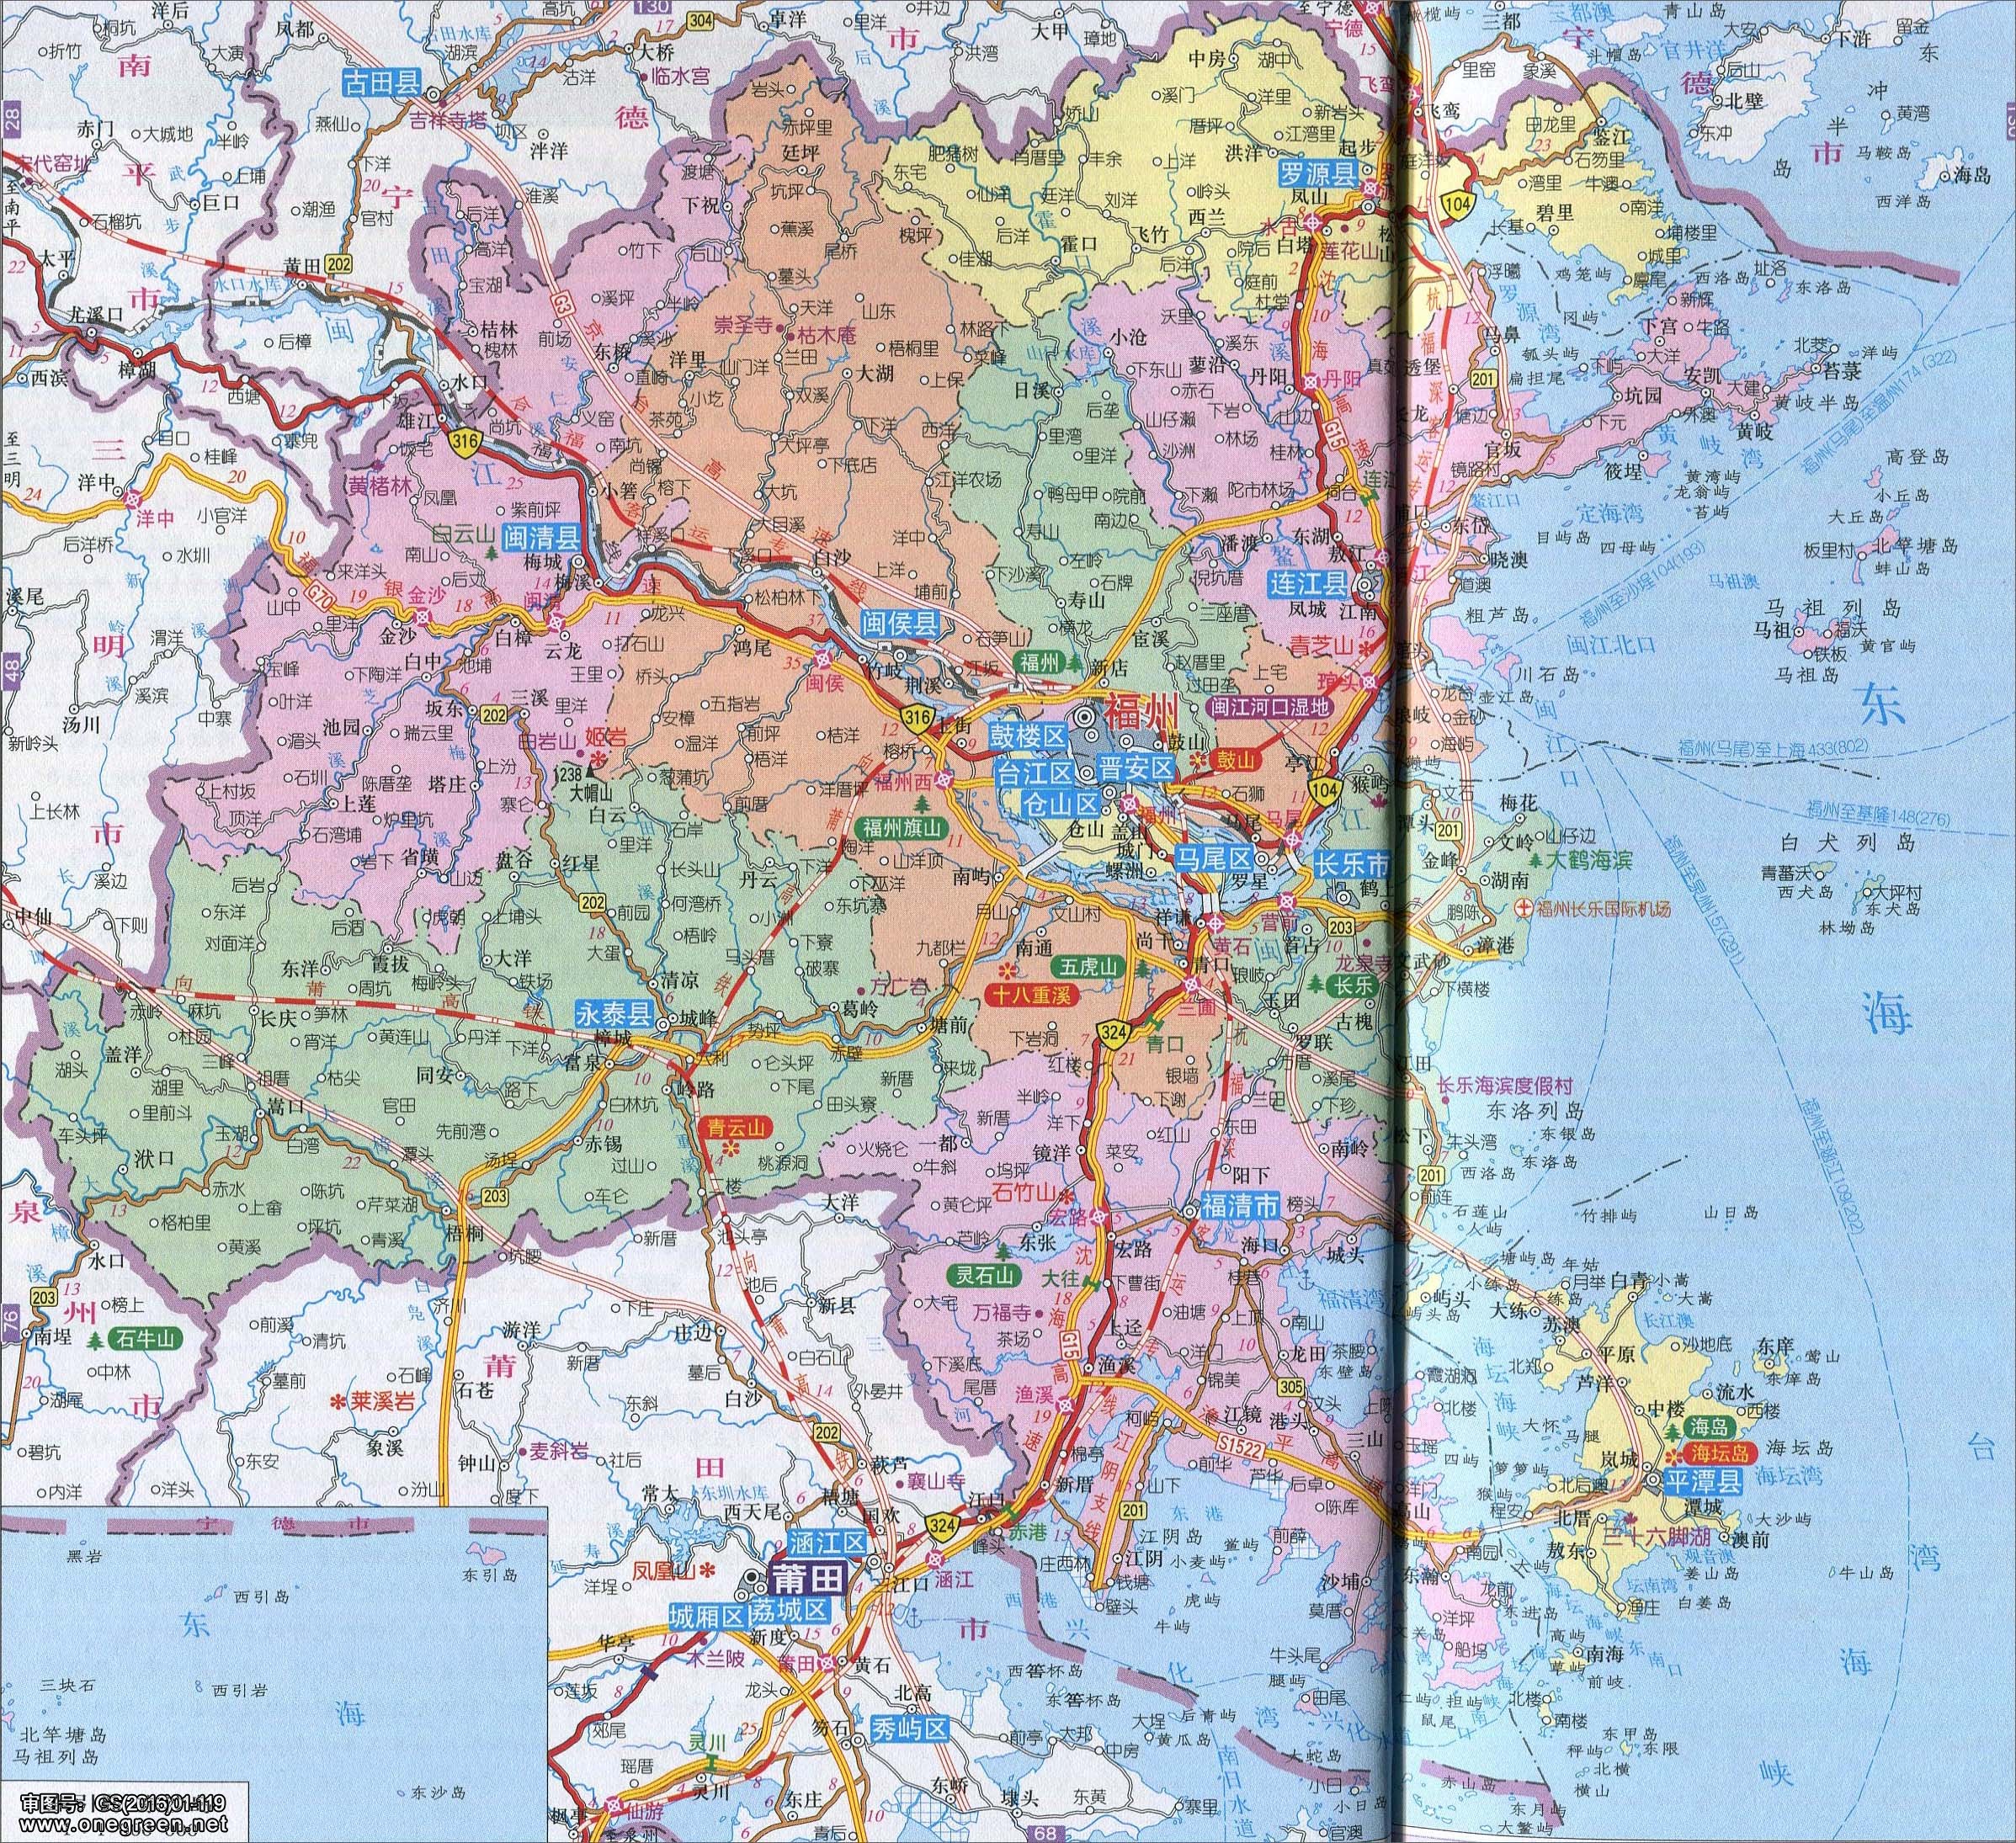 福州地图地形版 - 福州市地图 - 地理教师网